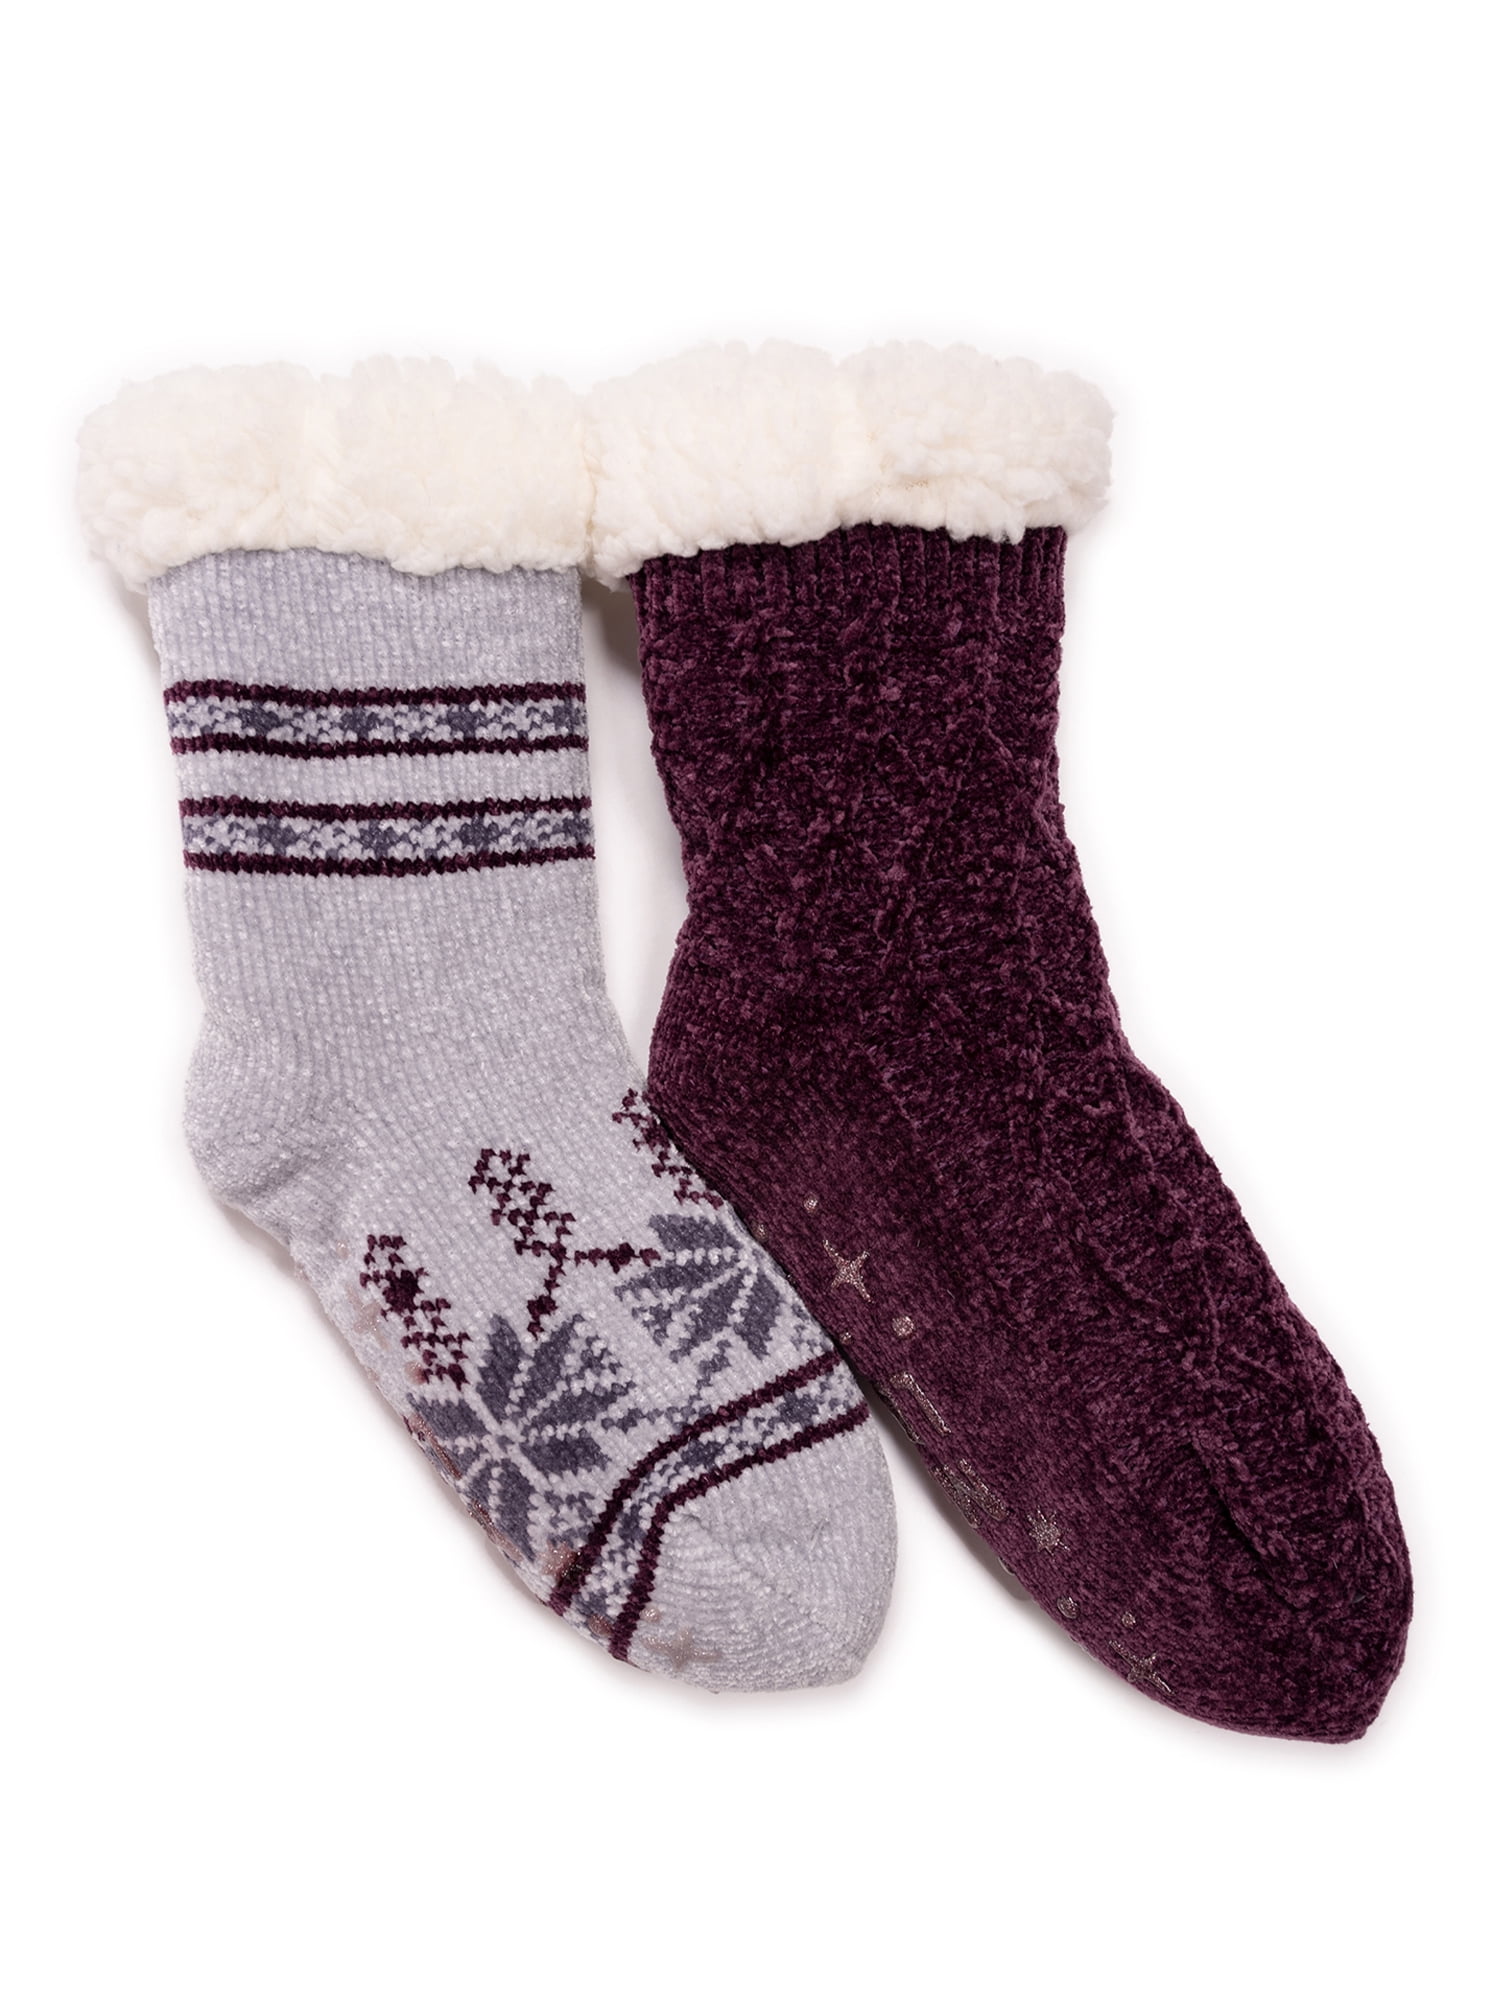 Ruikailucky-women's Socks Thick Wool Socks For Women Non-slip Home Socks  Slippers, One Size (35-42)